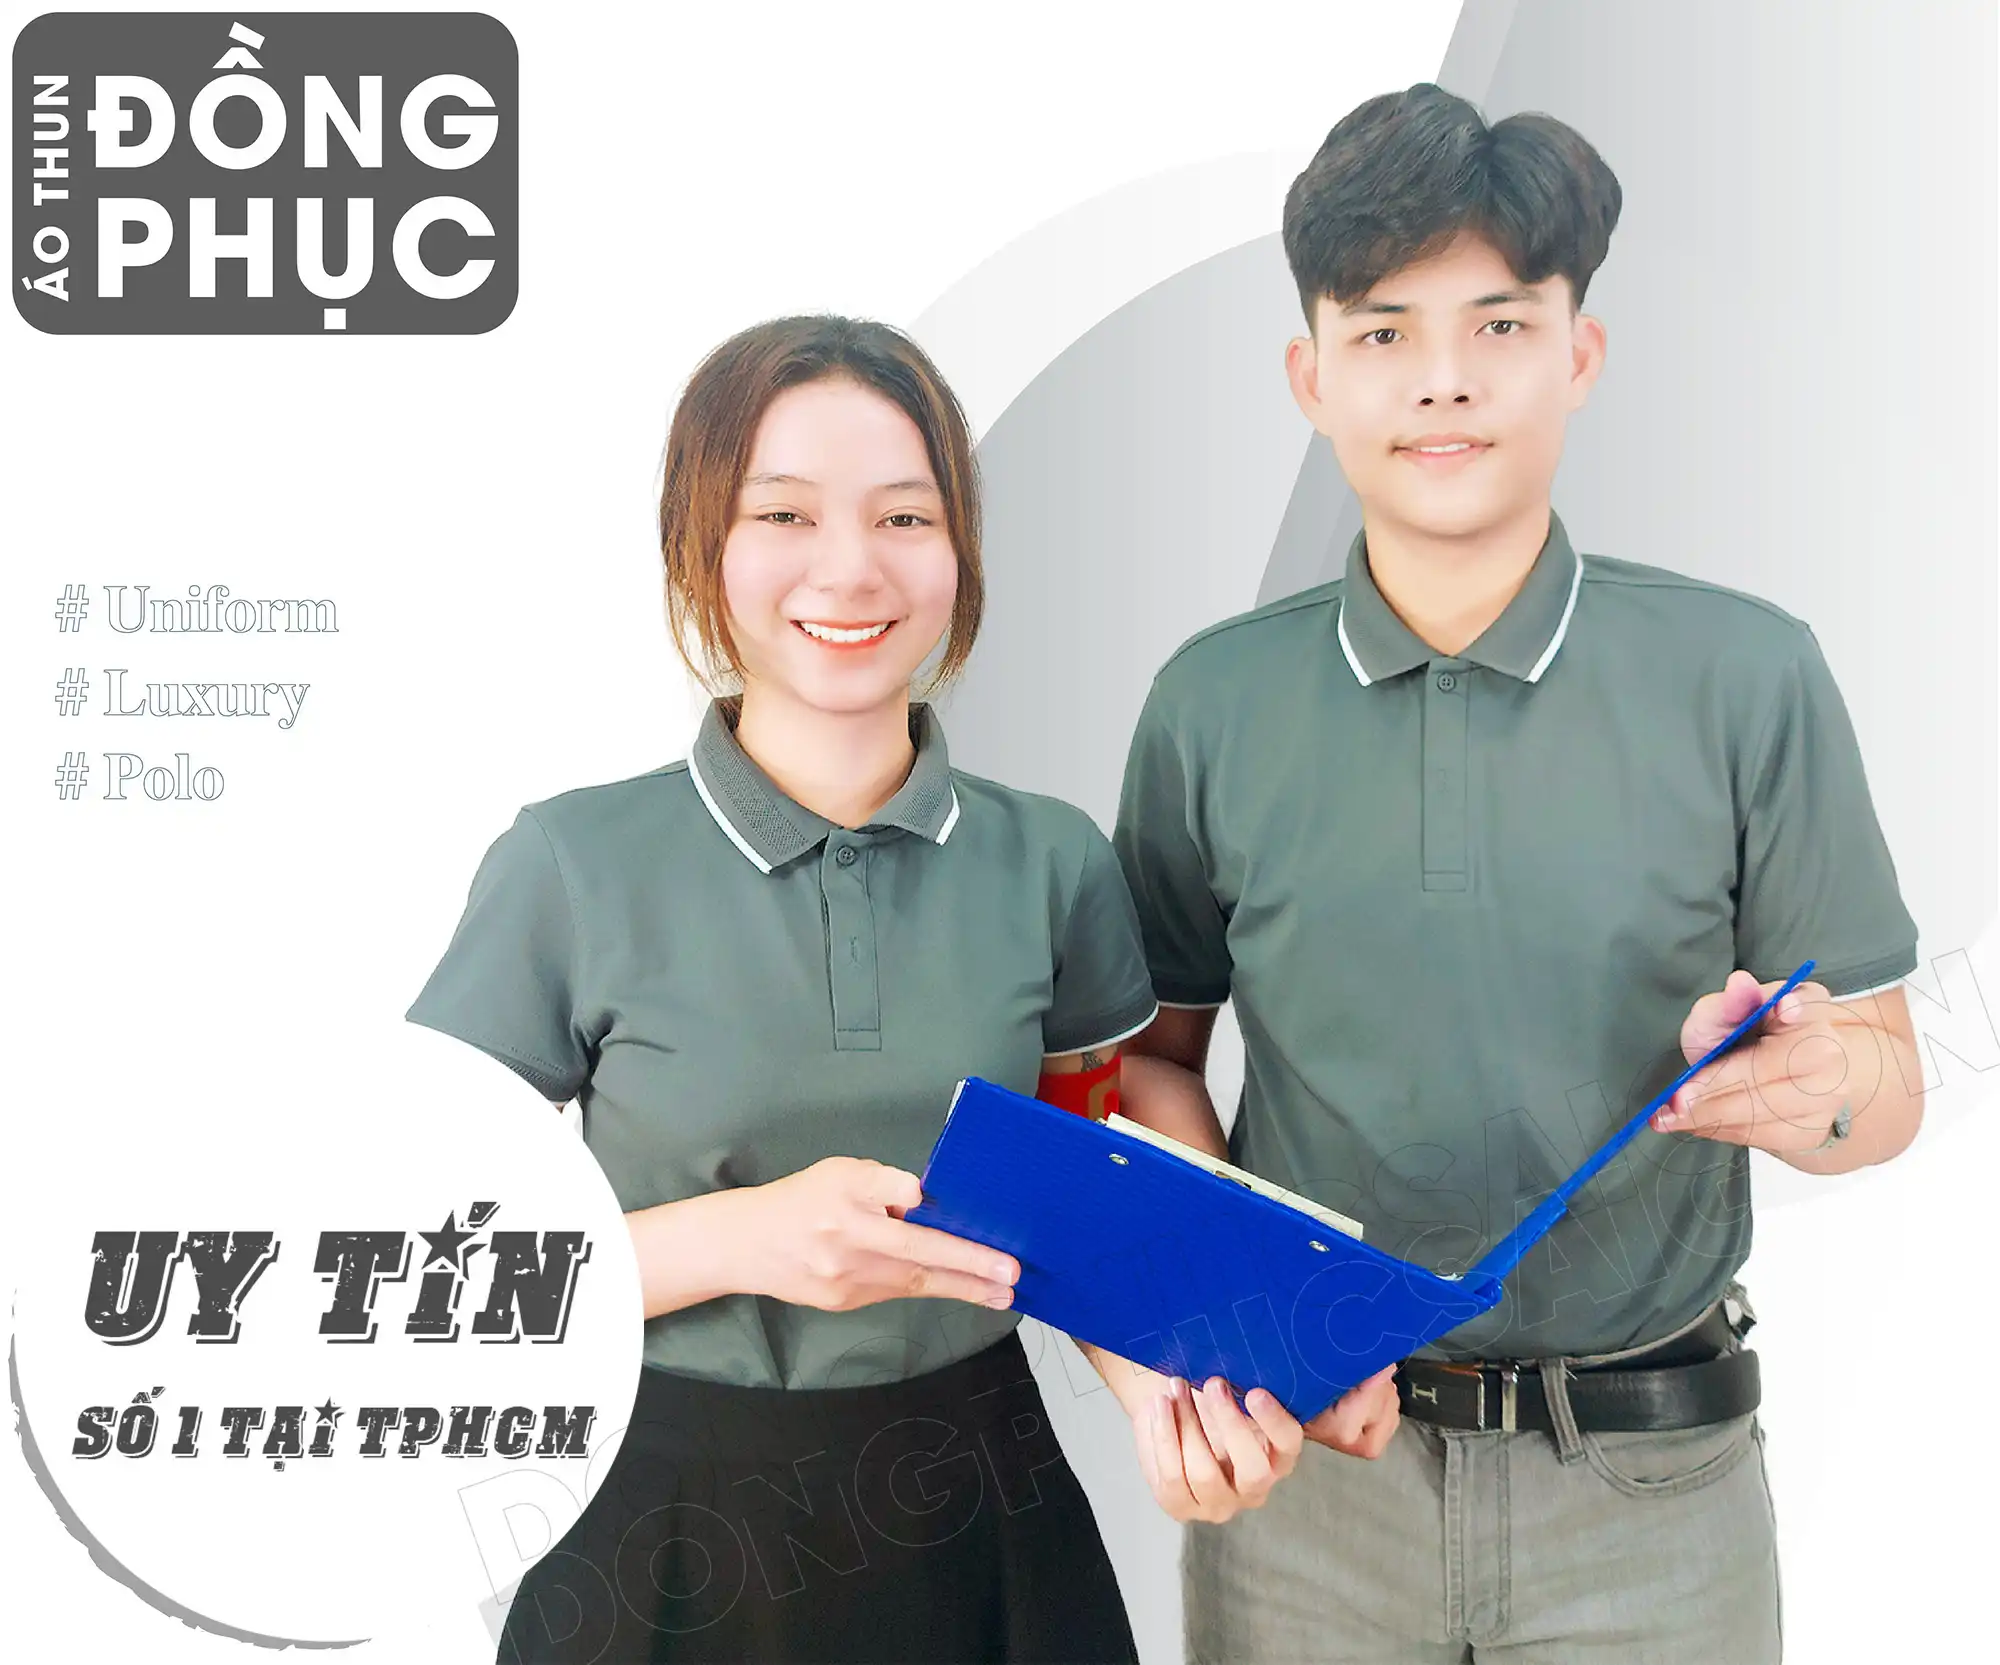 Quy trình sản xuất áo thun đồng phục tại Đồng Phục Sài Gòn - TV32 AT LAN 3 1394